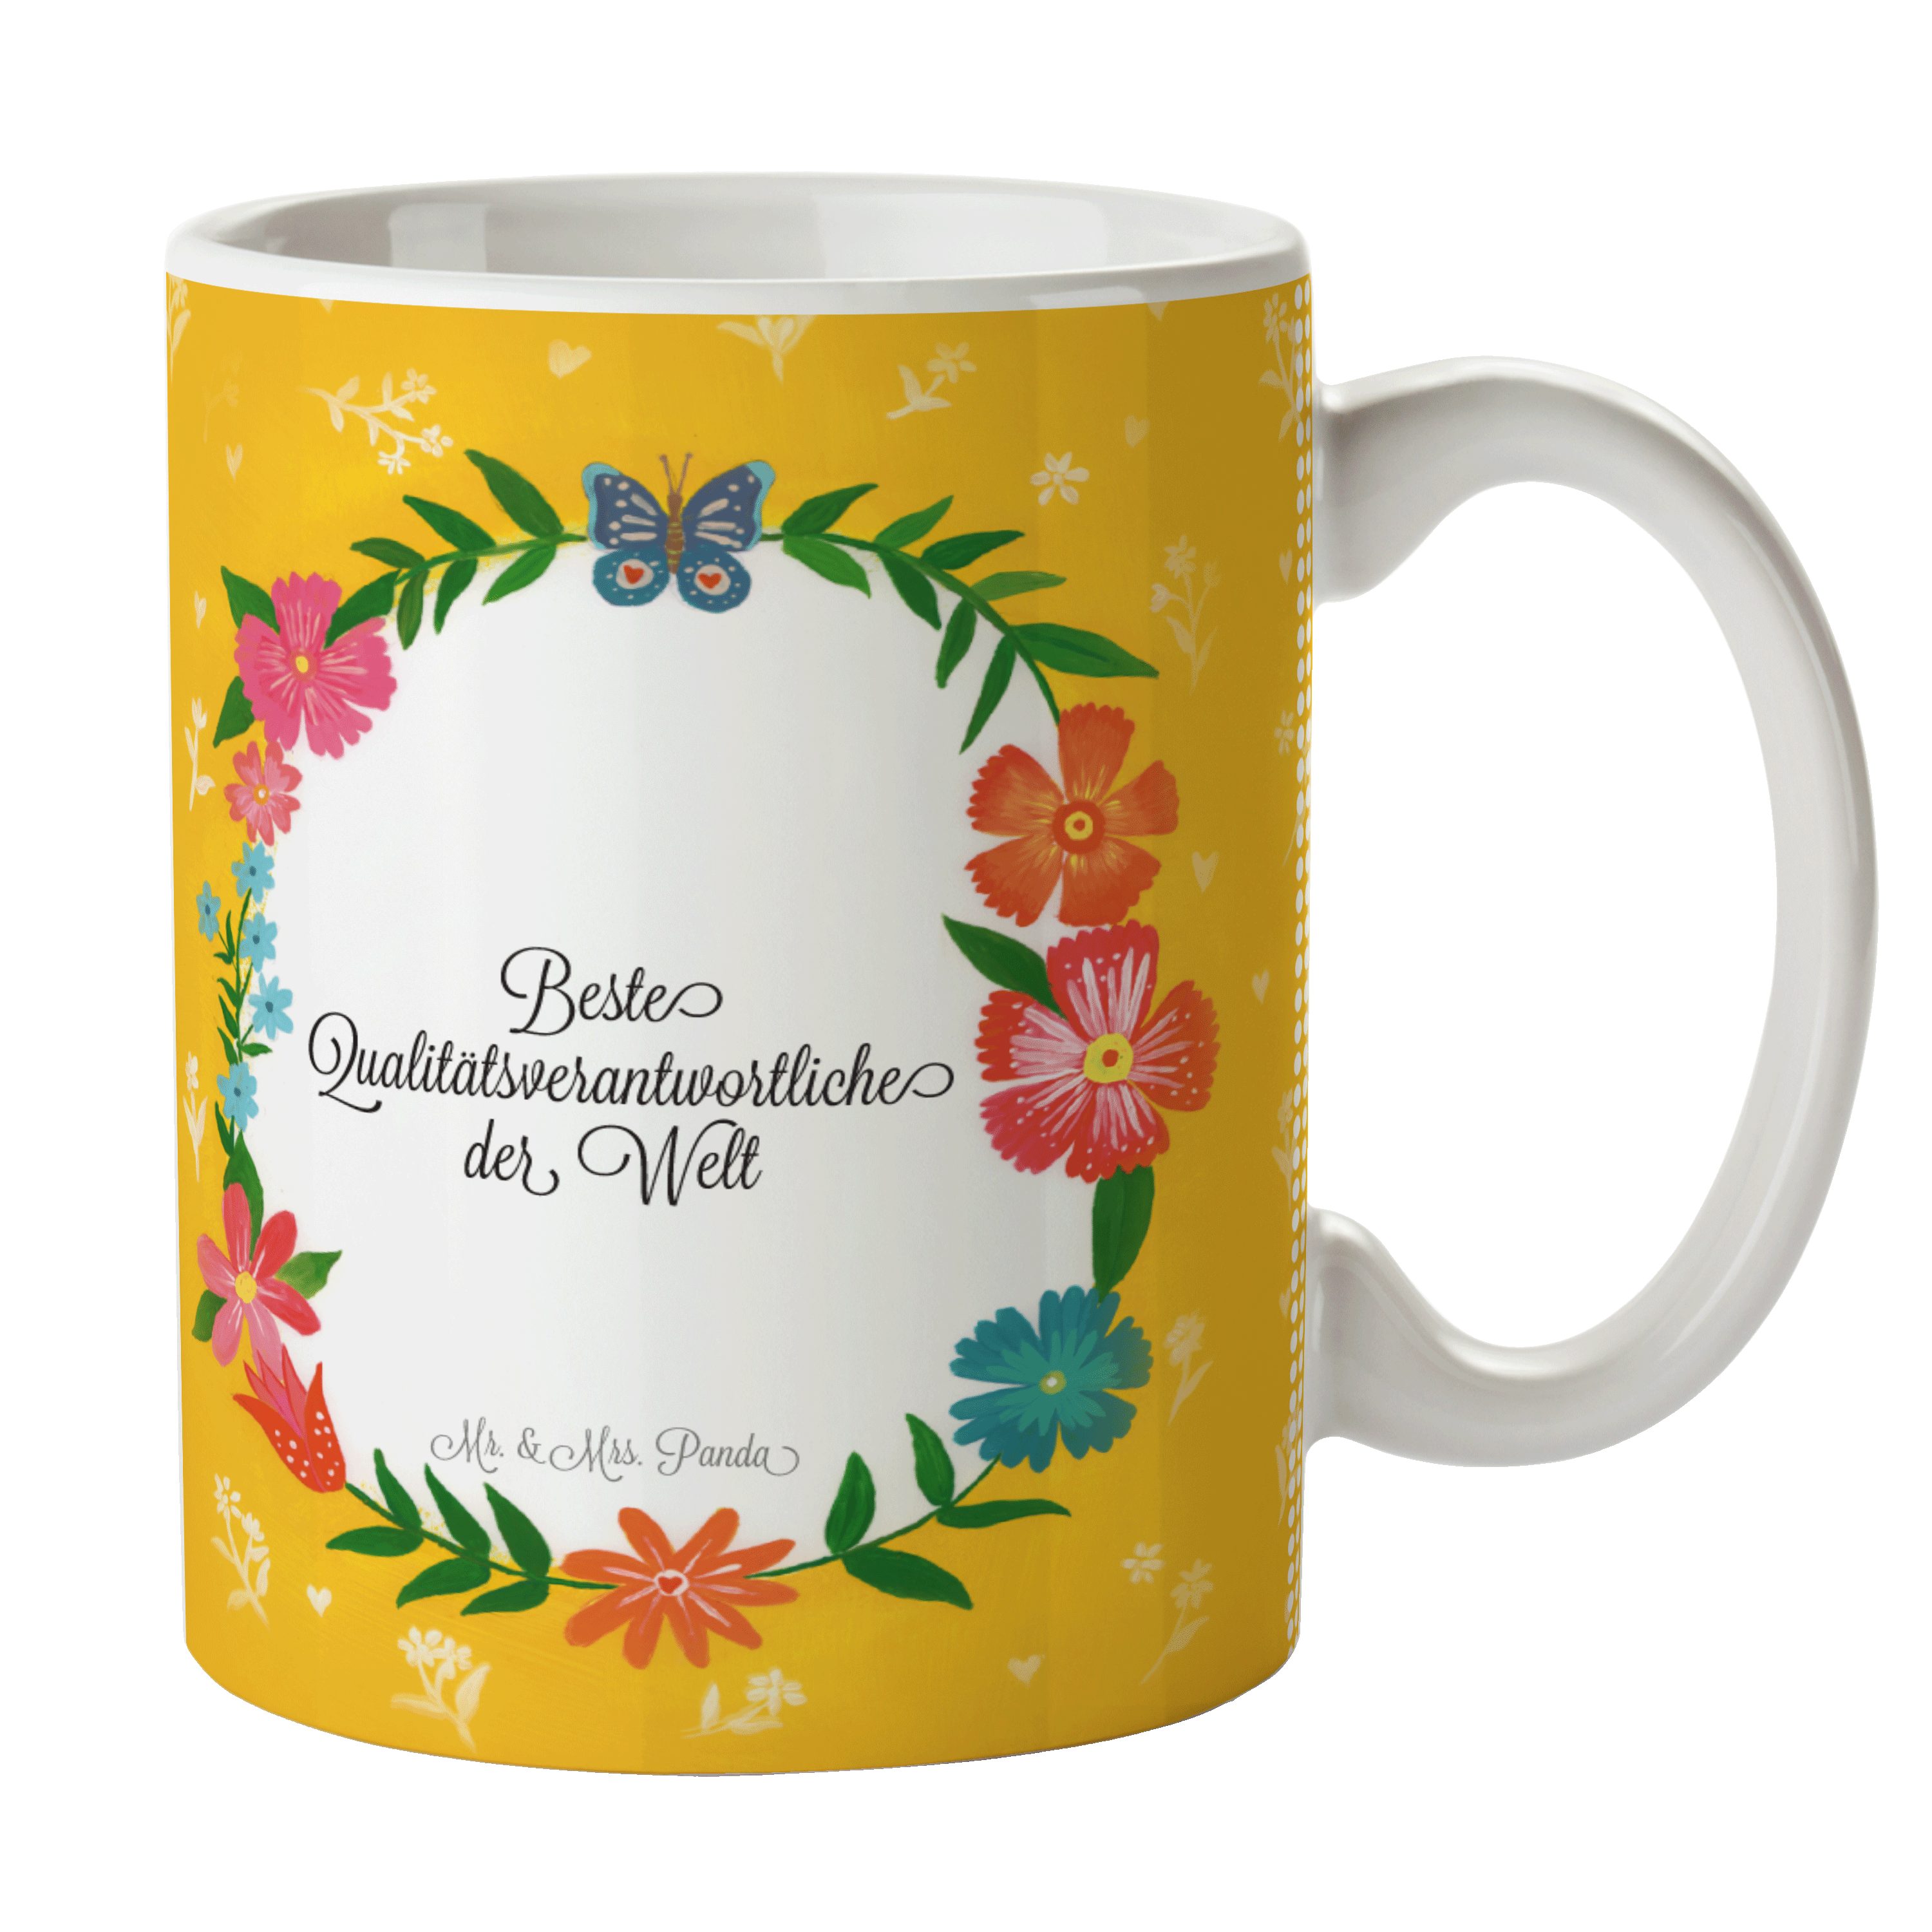 Mr. & Mrs. Panda Geschenk, - Tee, Berufsausbildung, Keramik Qualitätsverantwortliche Tasse Teebecher